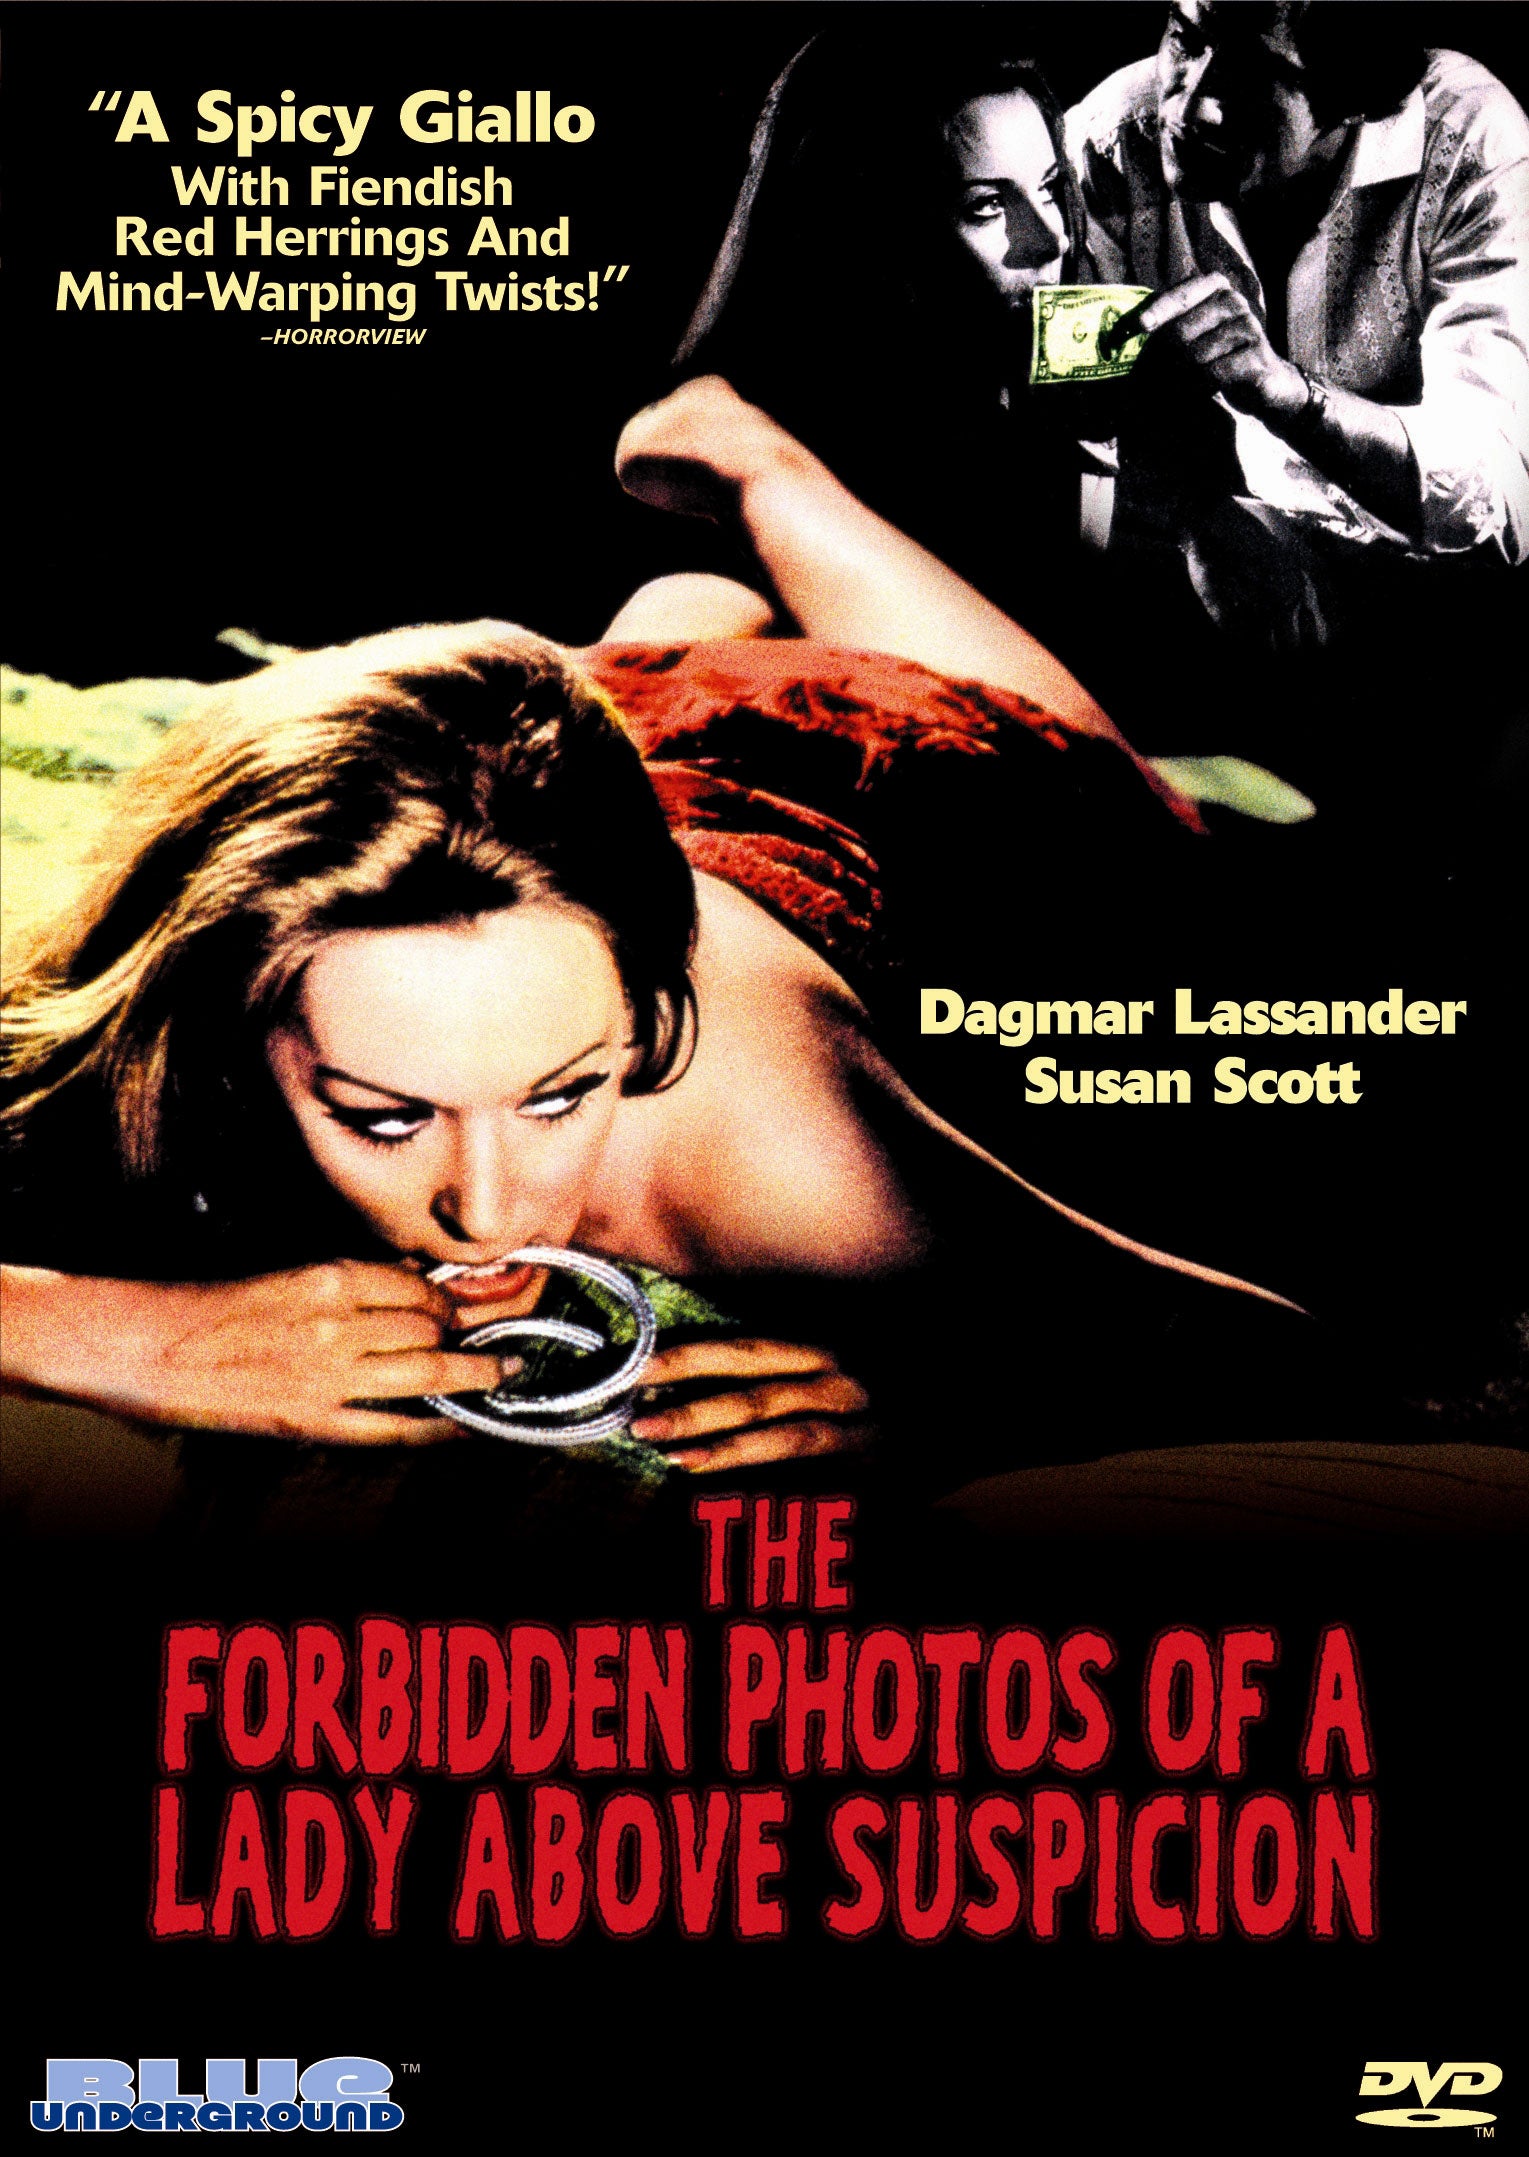 THE FORBIDDEN PHOTOS OF A LADY ABOVE SUSPICION DVD